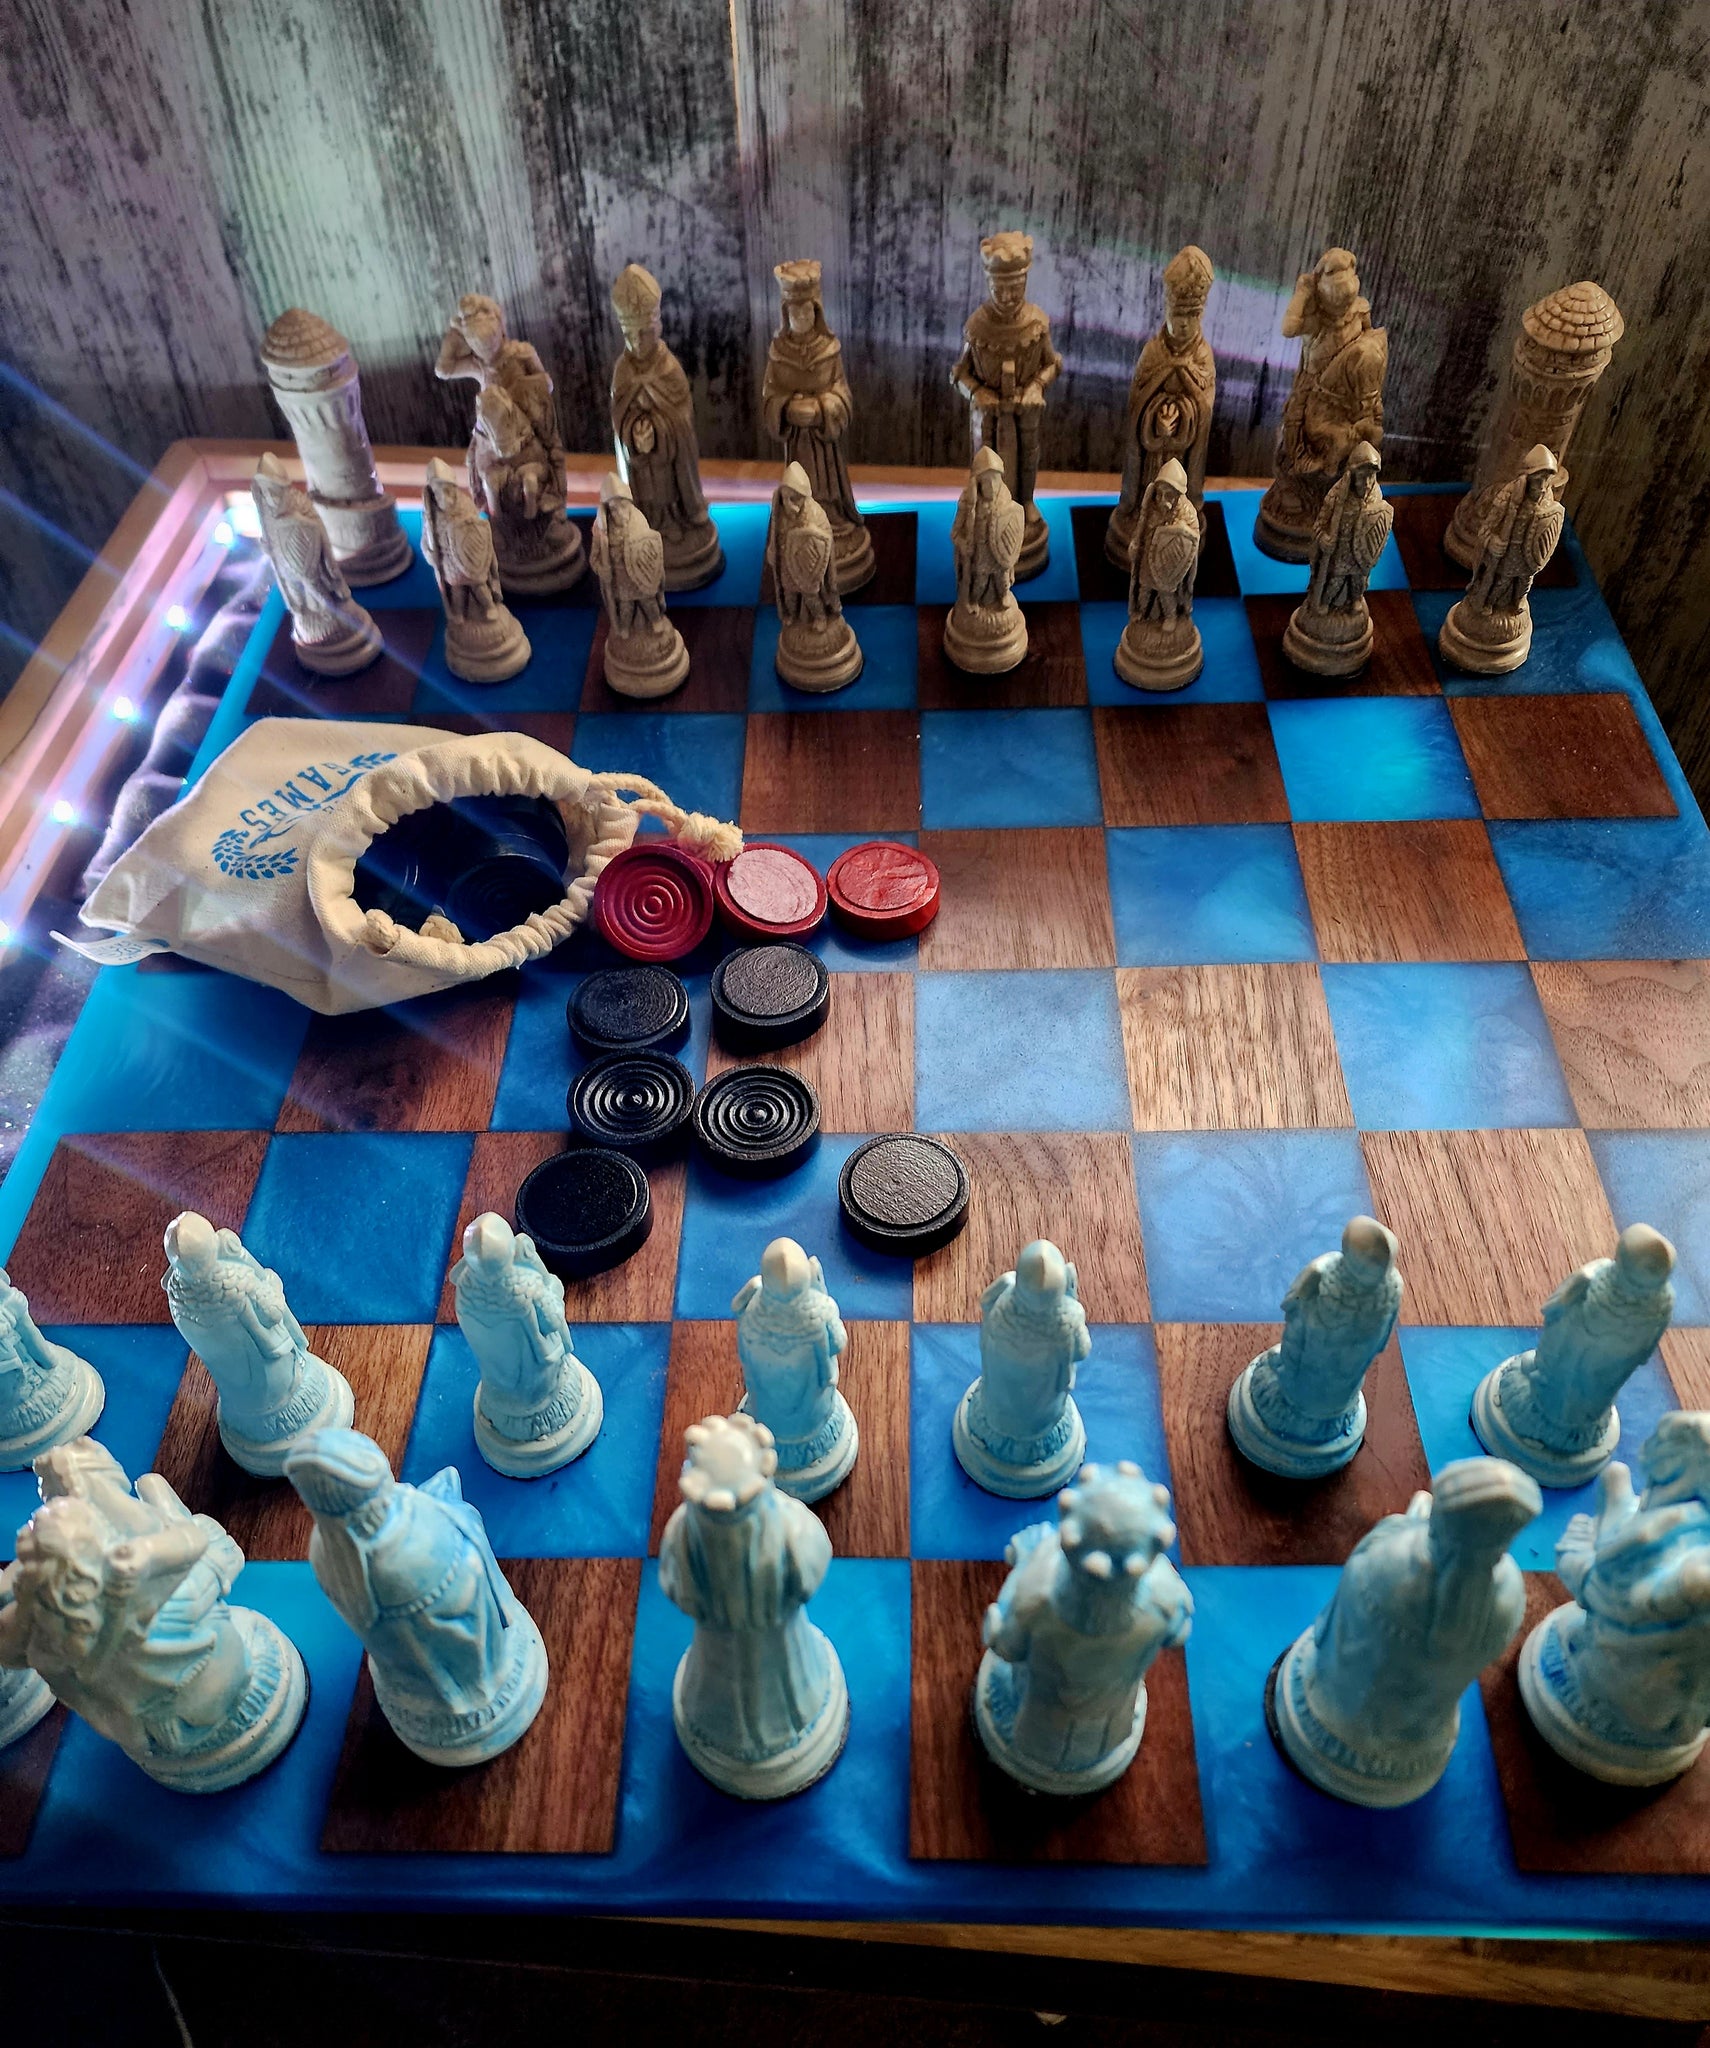 Back lit Walnut and Epoxy Chess Board